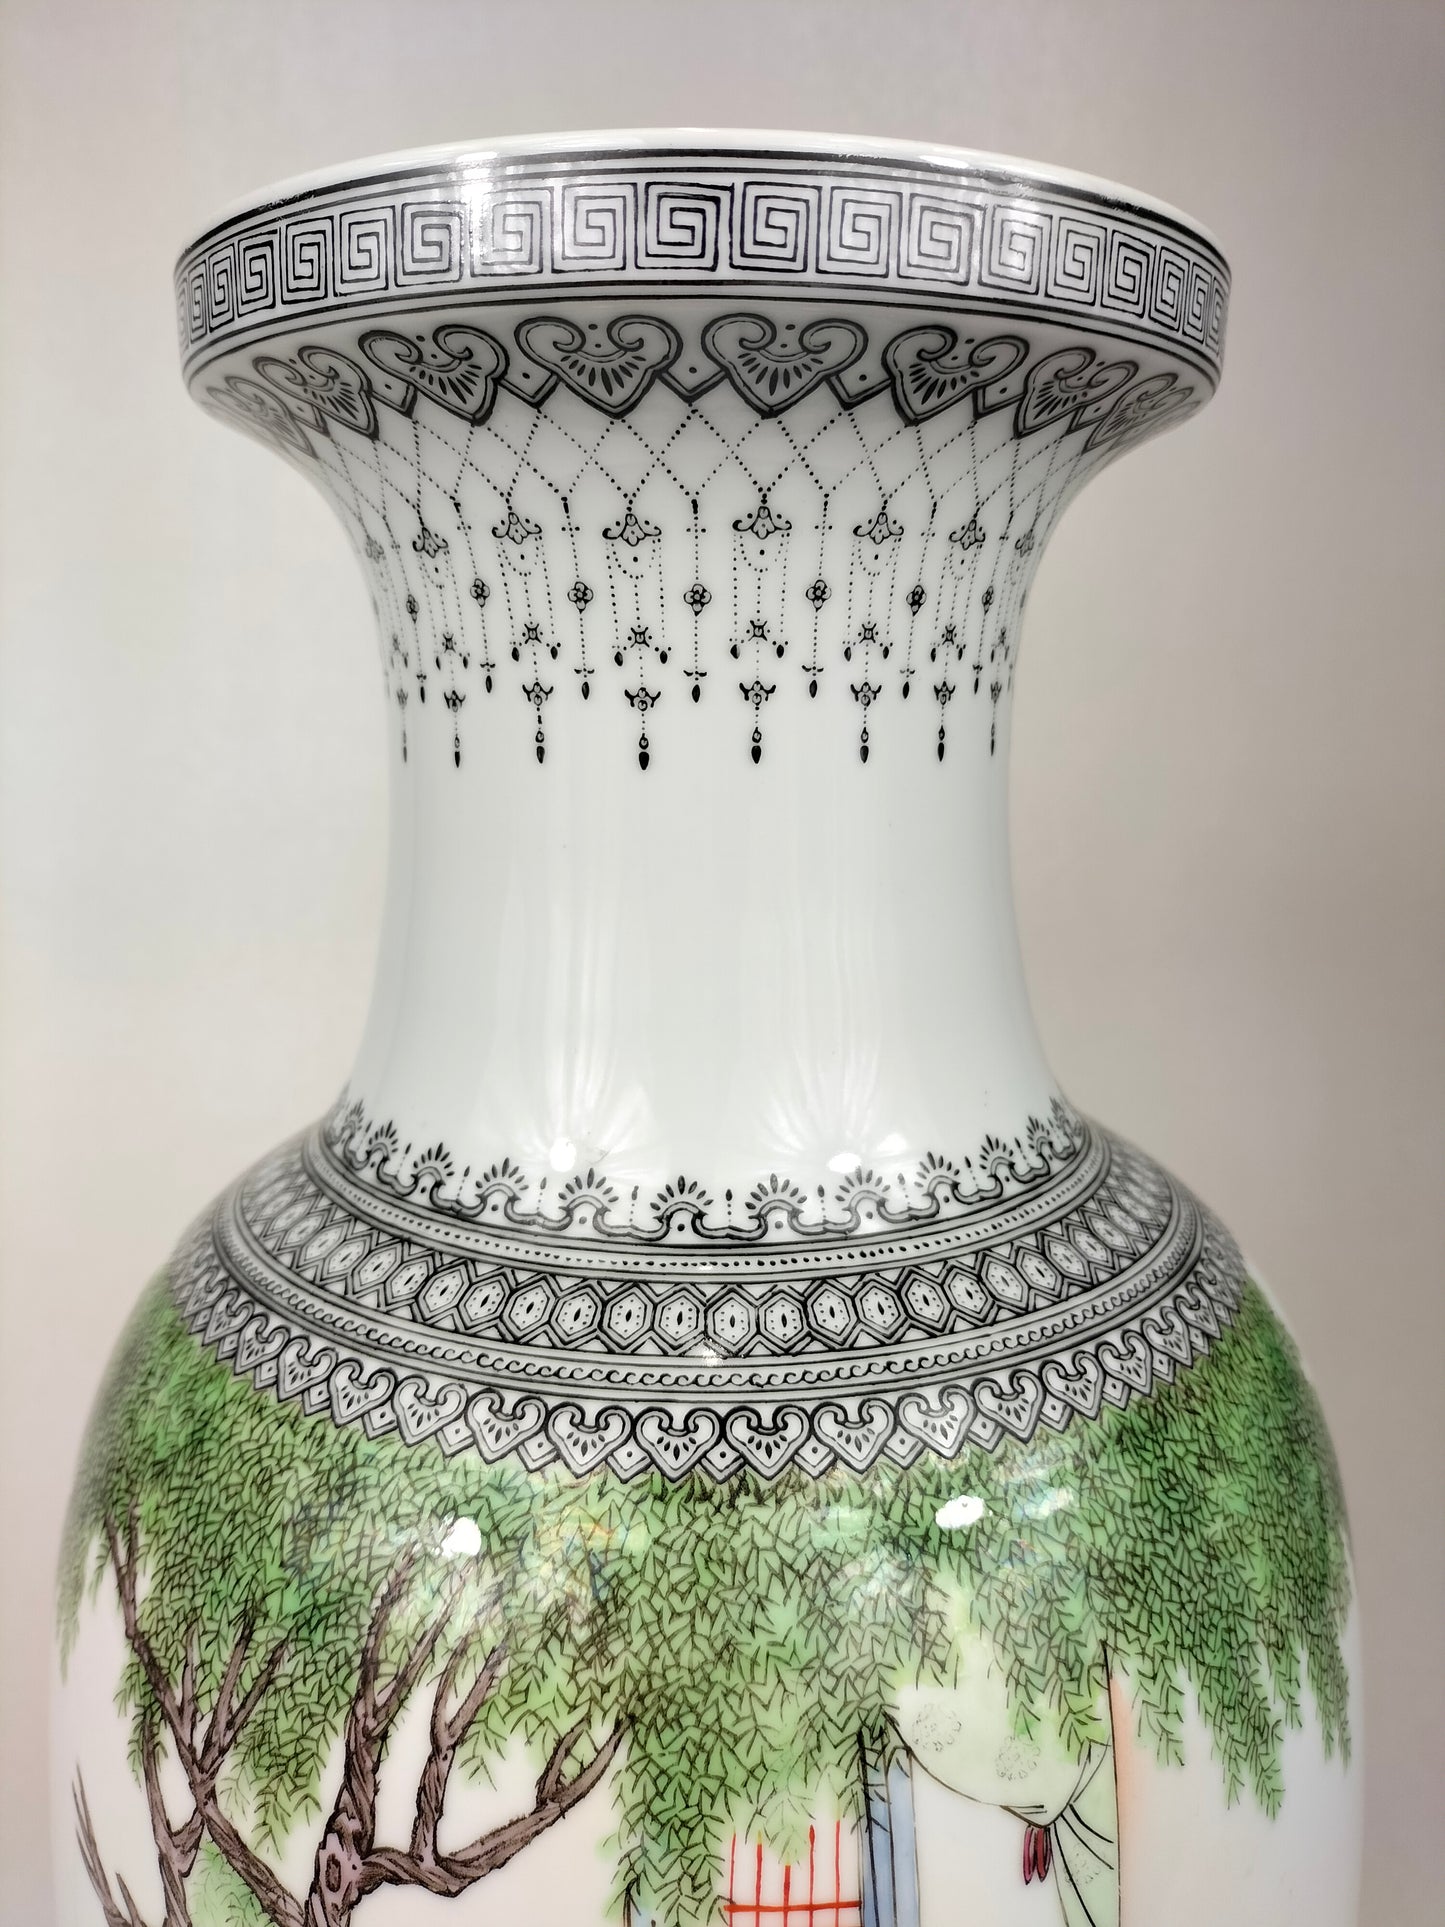 Grande vaso chinês policromado decorado com cena de jardim // Jingdezhen - século XX